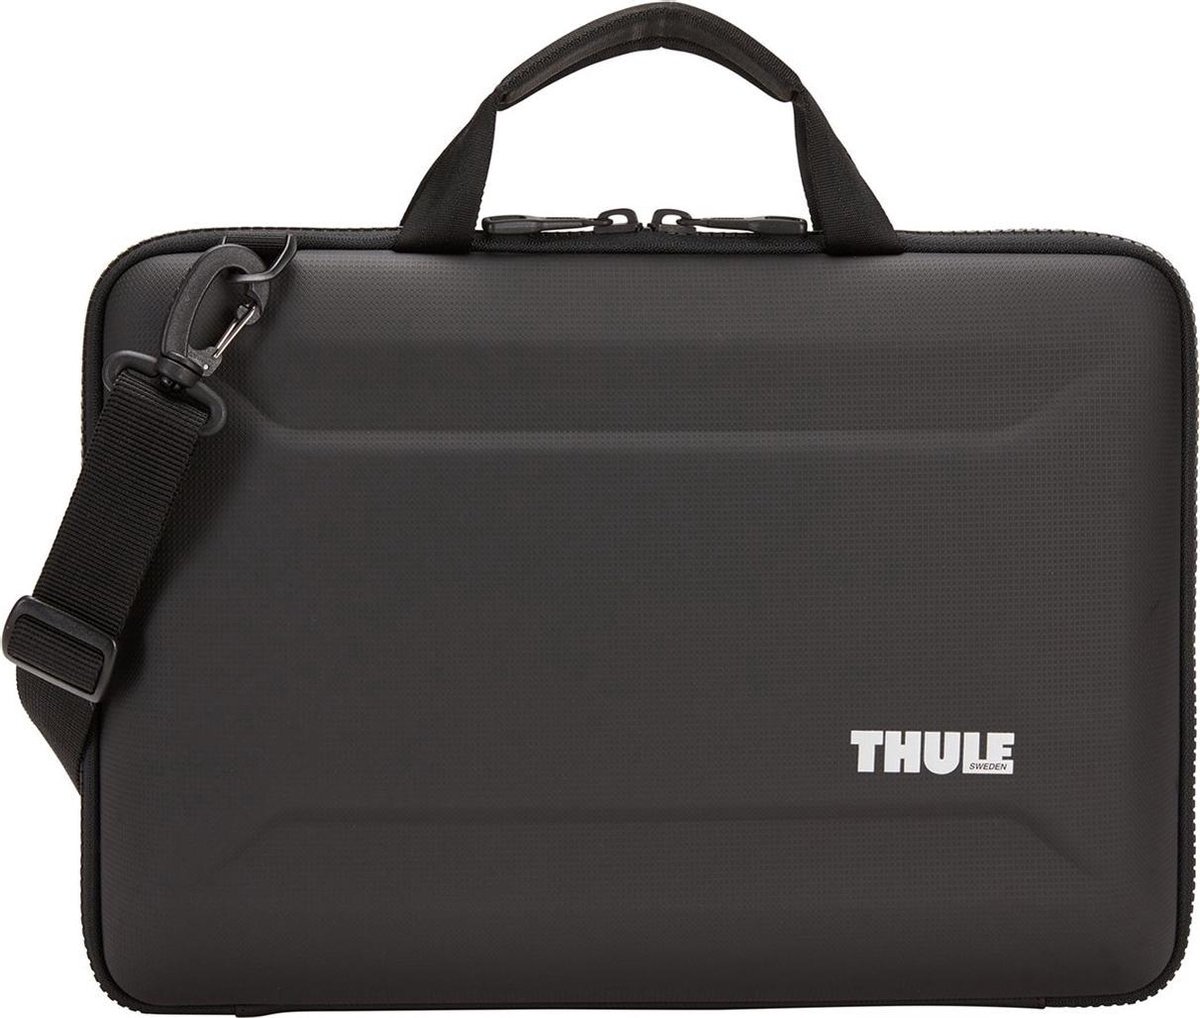 Thule Gauntlet 4 - Laptoptas - MacBook Pro 15 inch 2018 - Zwart